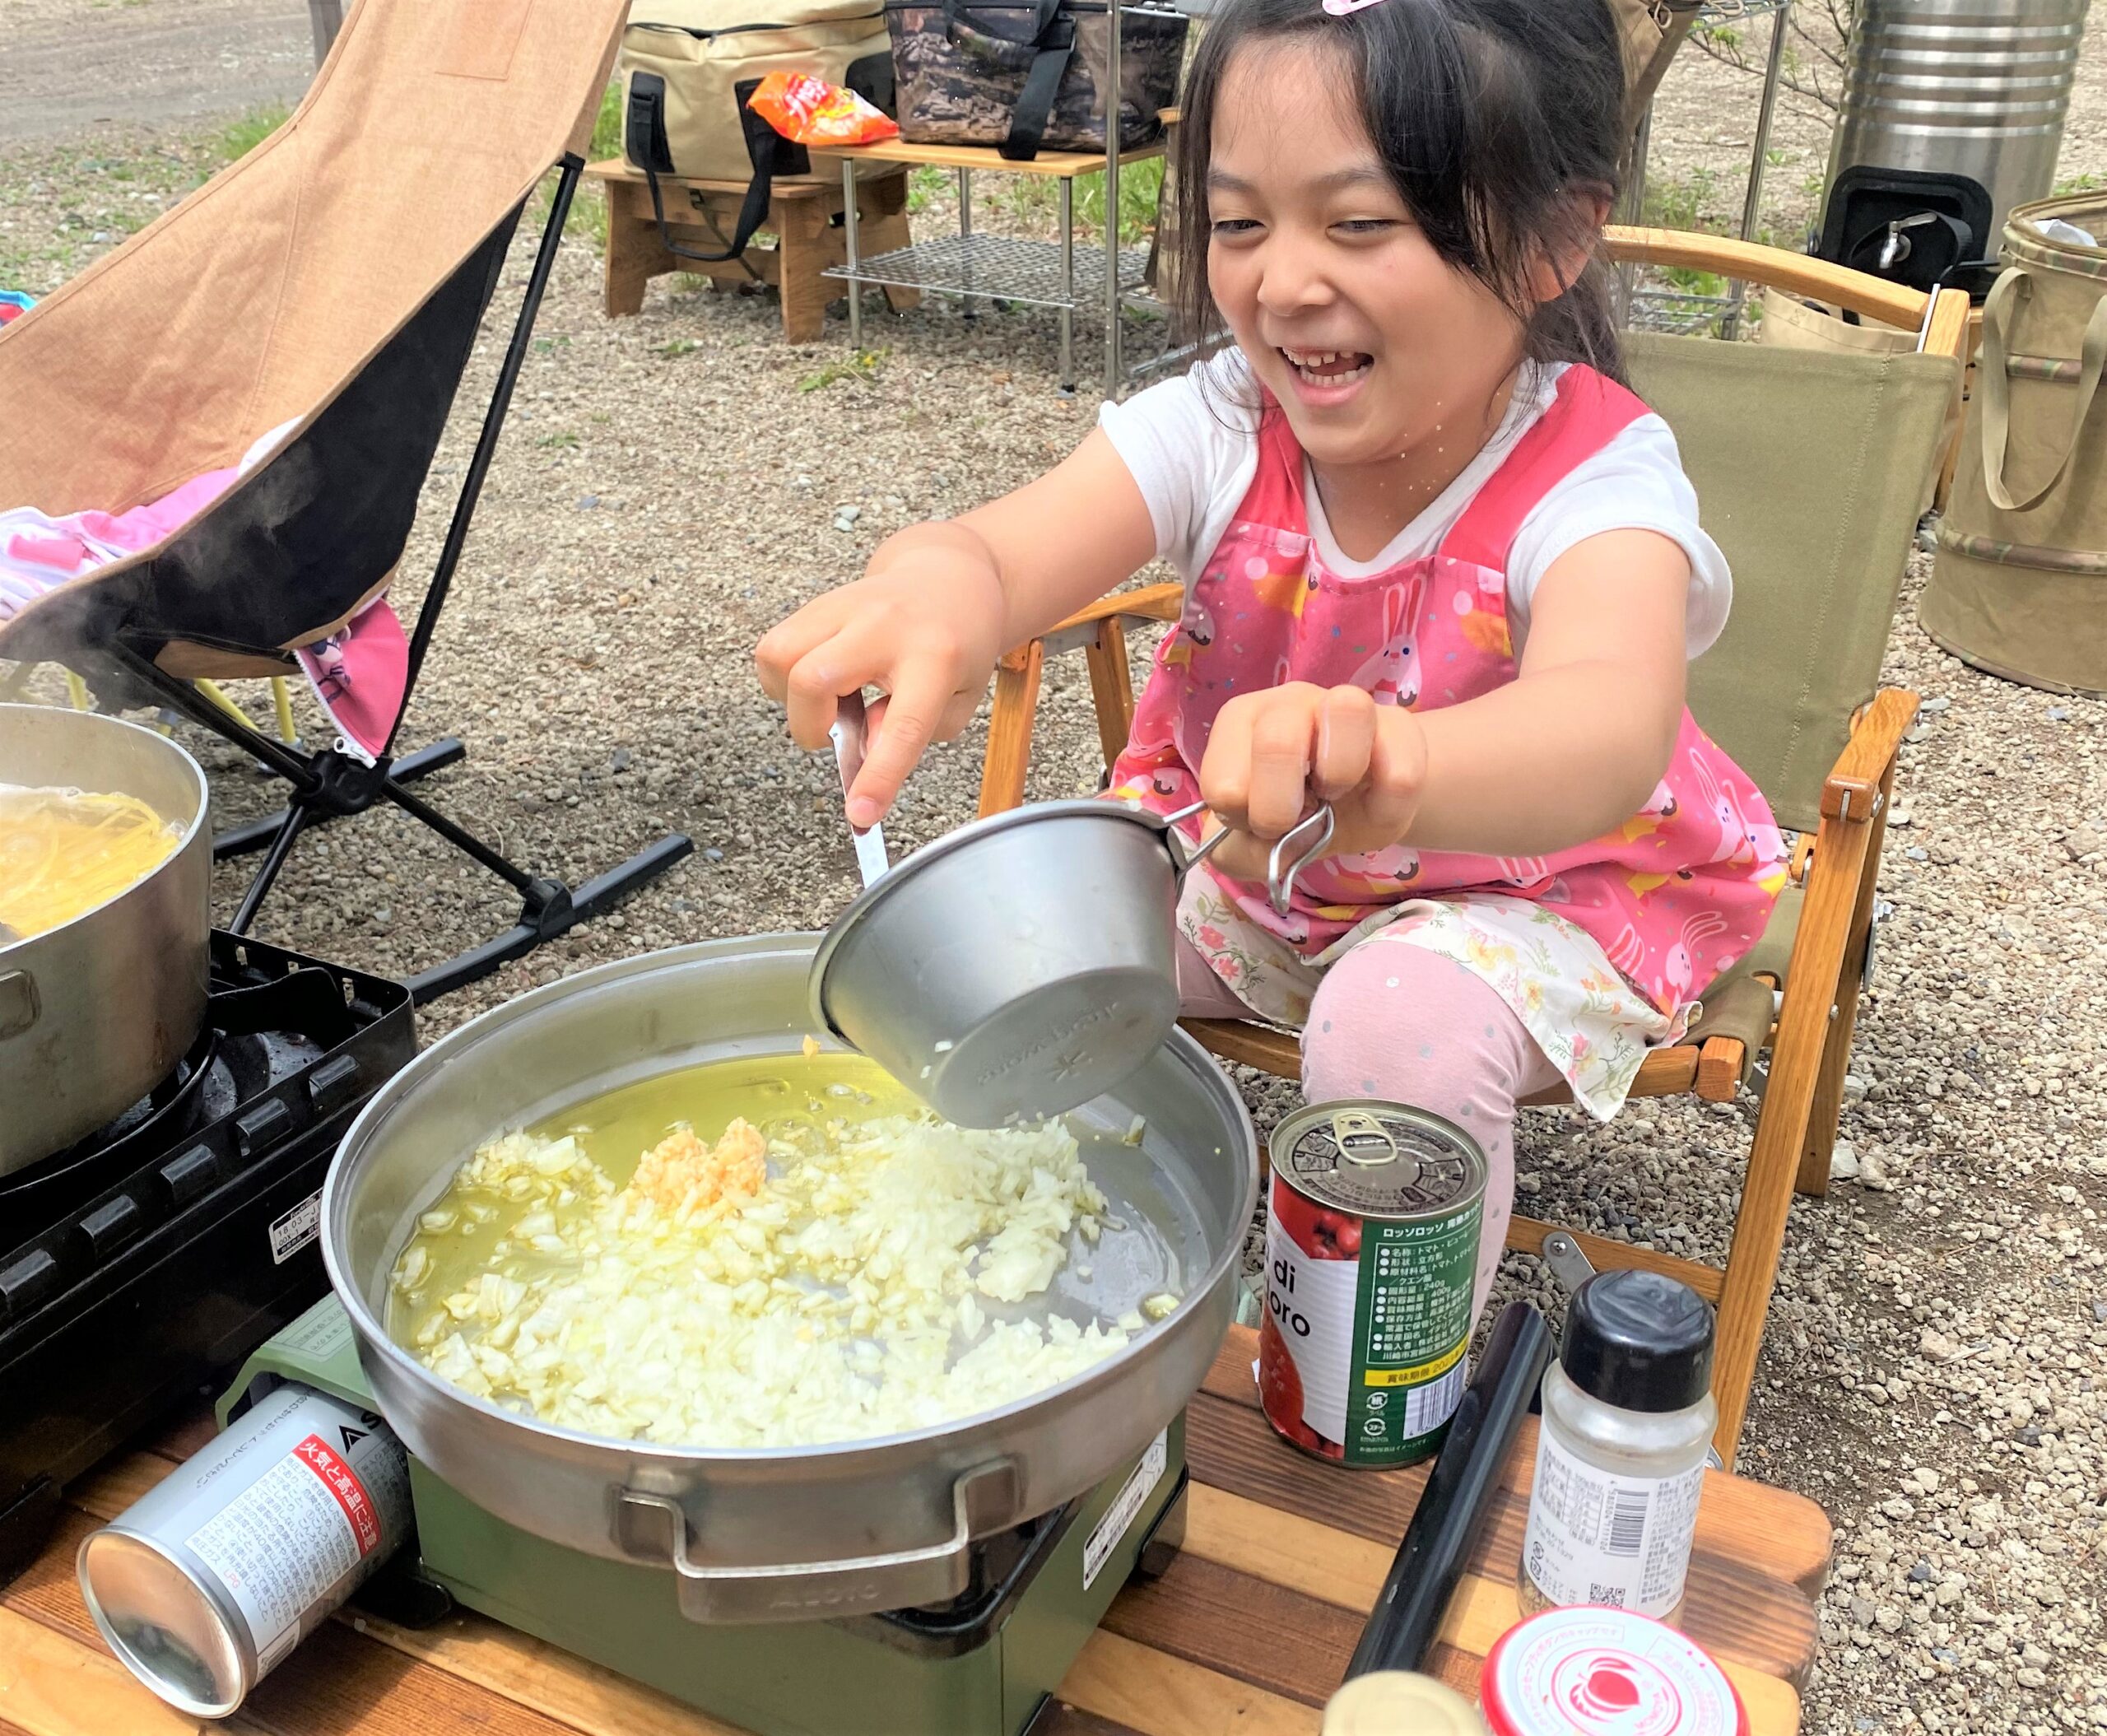   子どもが好きなら“普通の料理”でも記憶に残る!? 「食育」の機会にするキャンプ料理